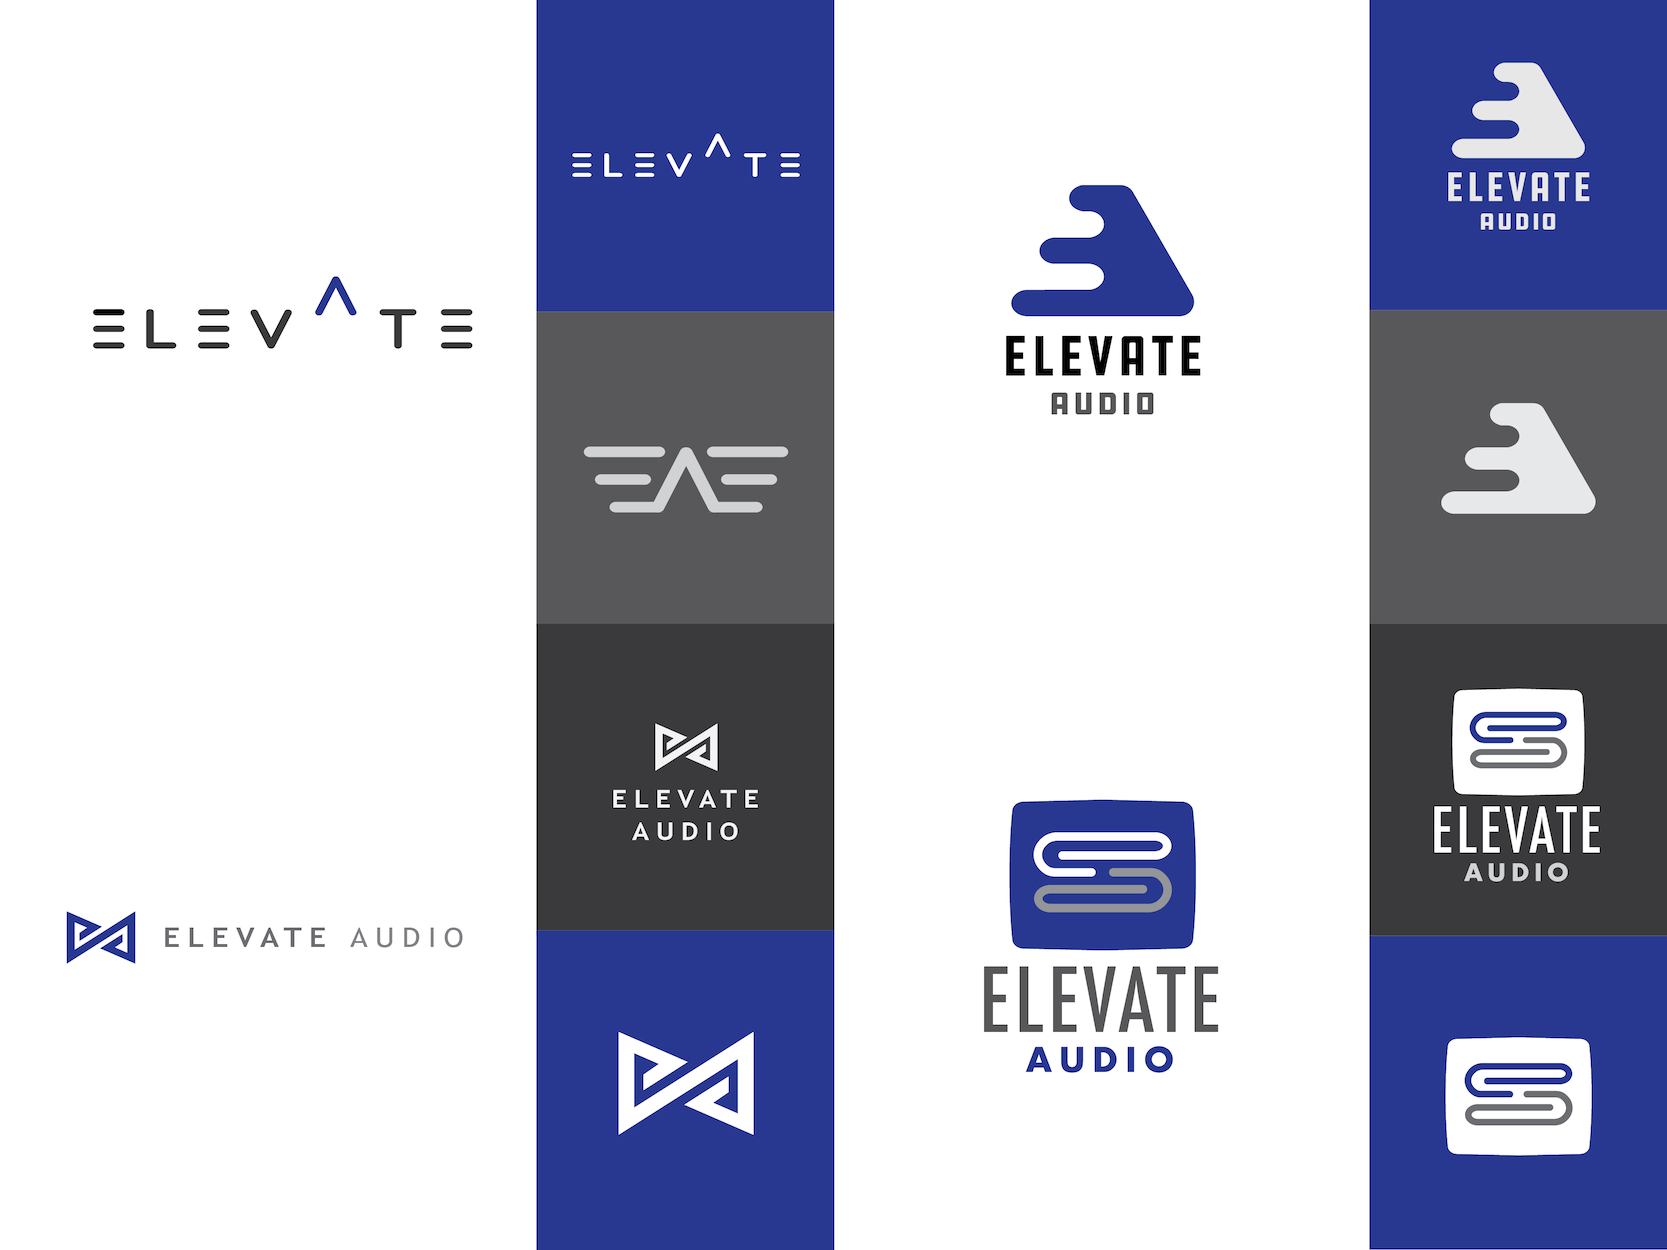 Elevate Audio Branding - Tony Headrick